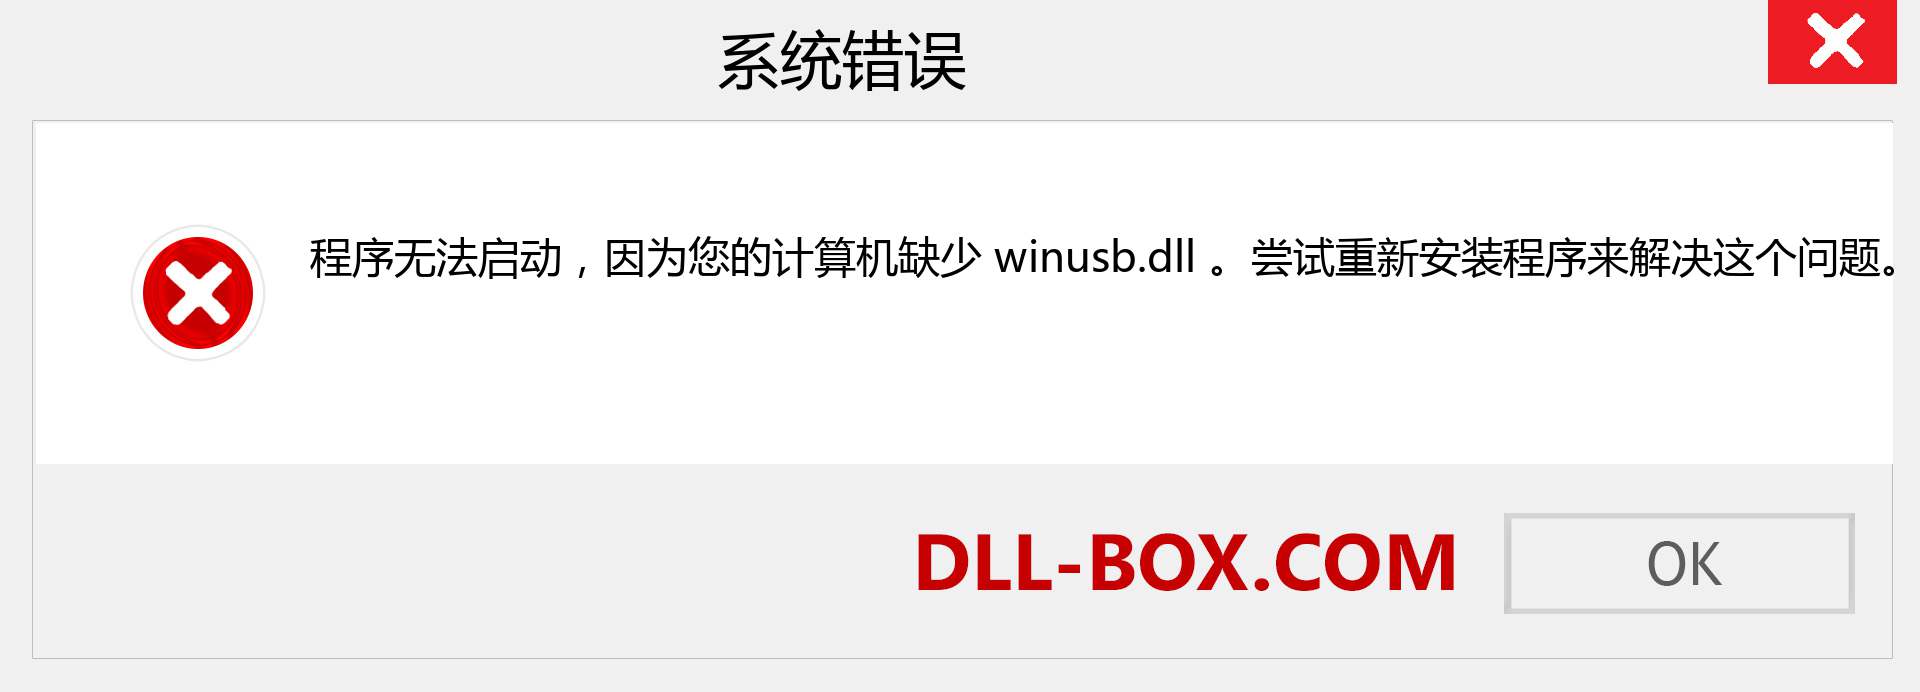 winusb.dll 文件丢失？。 适用于 Windows 7、8、10 的下载 - 修复 Windows、照片、图像上的 winusb dll 丢失错误